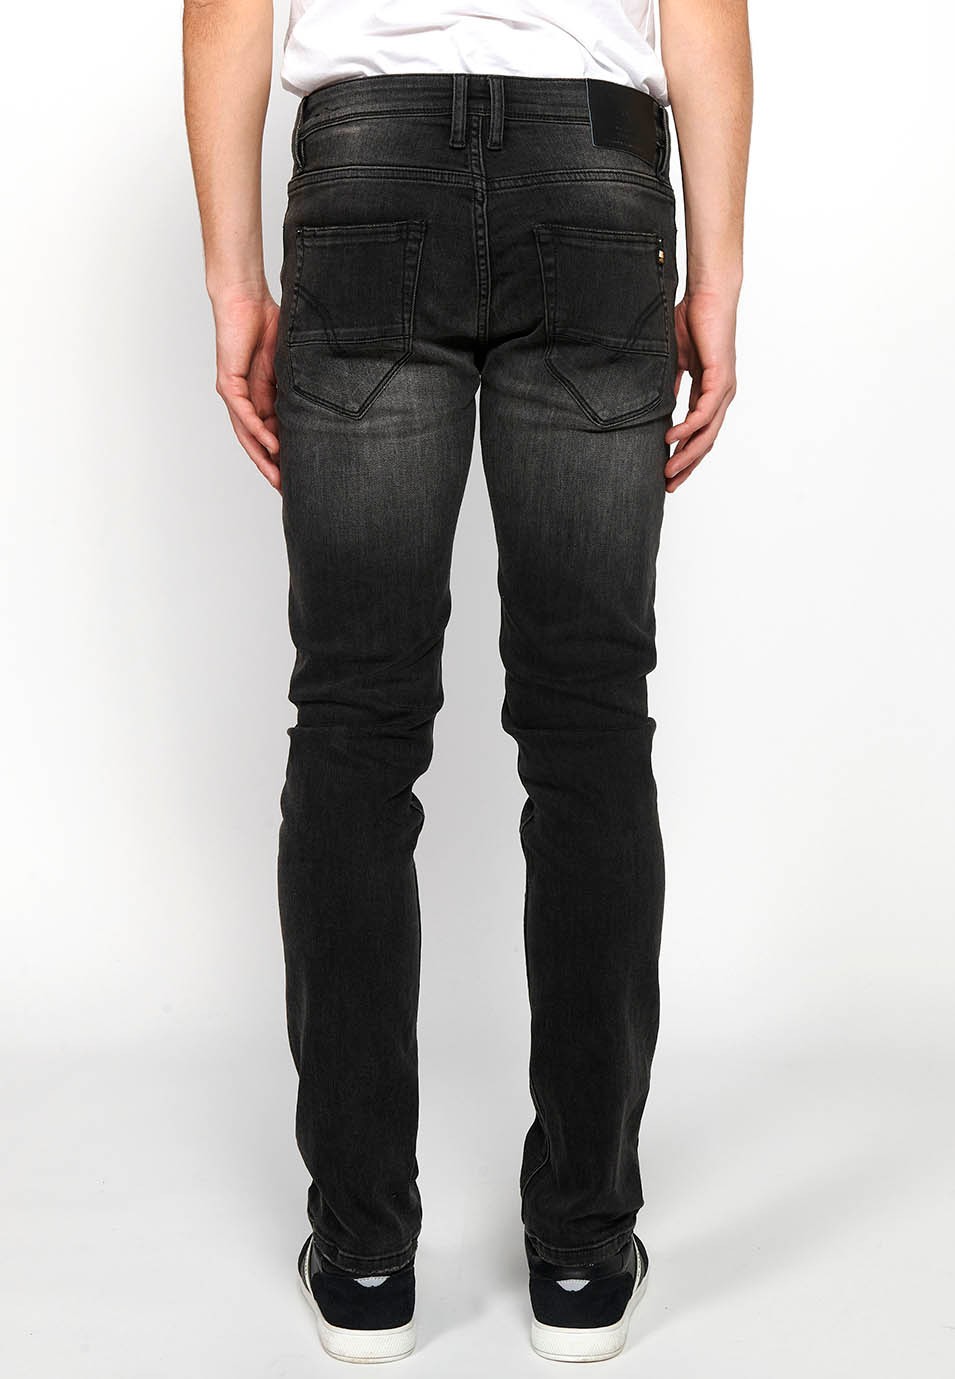 Pantalons texans llarg straigth regular fit amb Tancament davanter amb cremallera i botó de Color Denim Negre per a Home 2